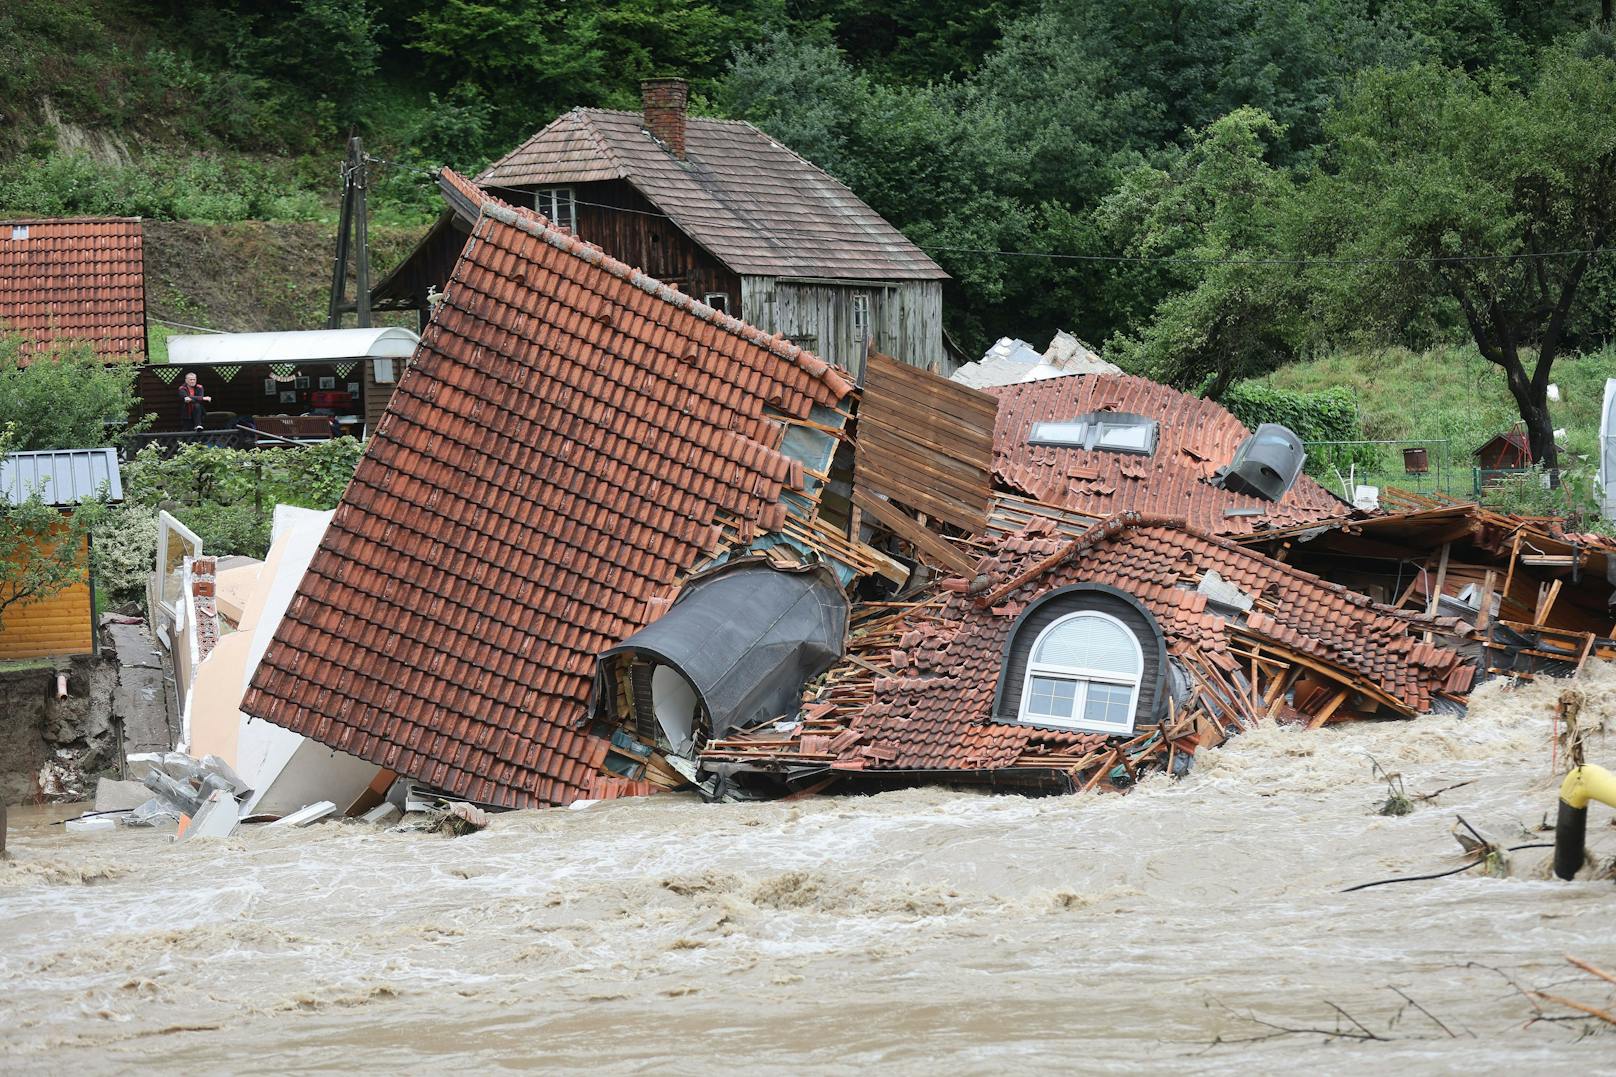 Heftige Überschwemmungen: Slowenien fordert NATO an